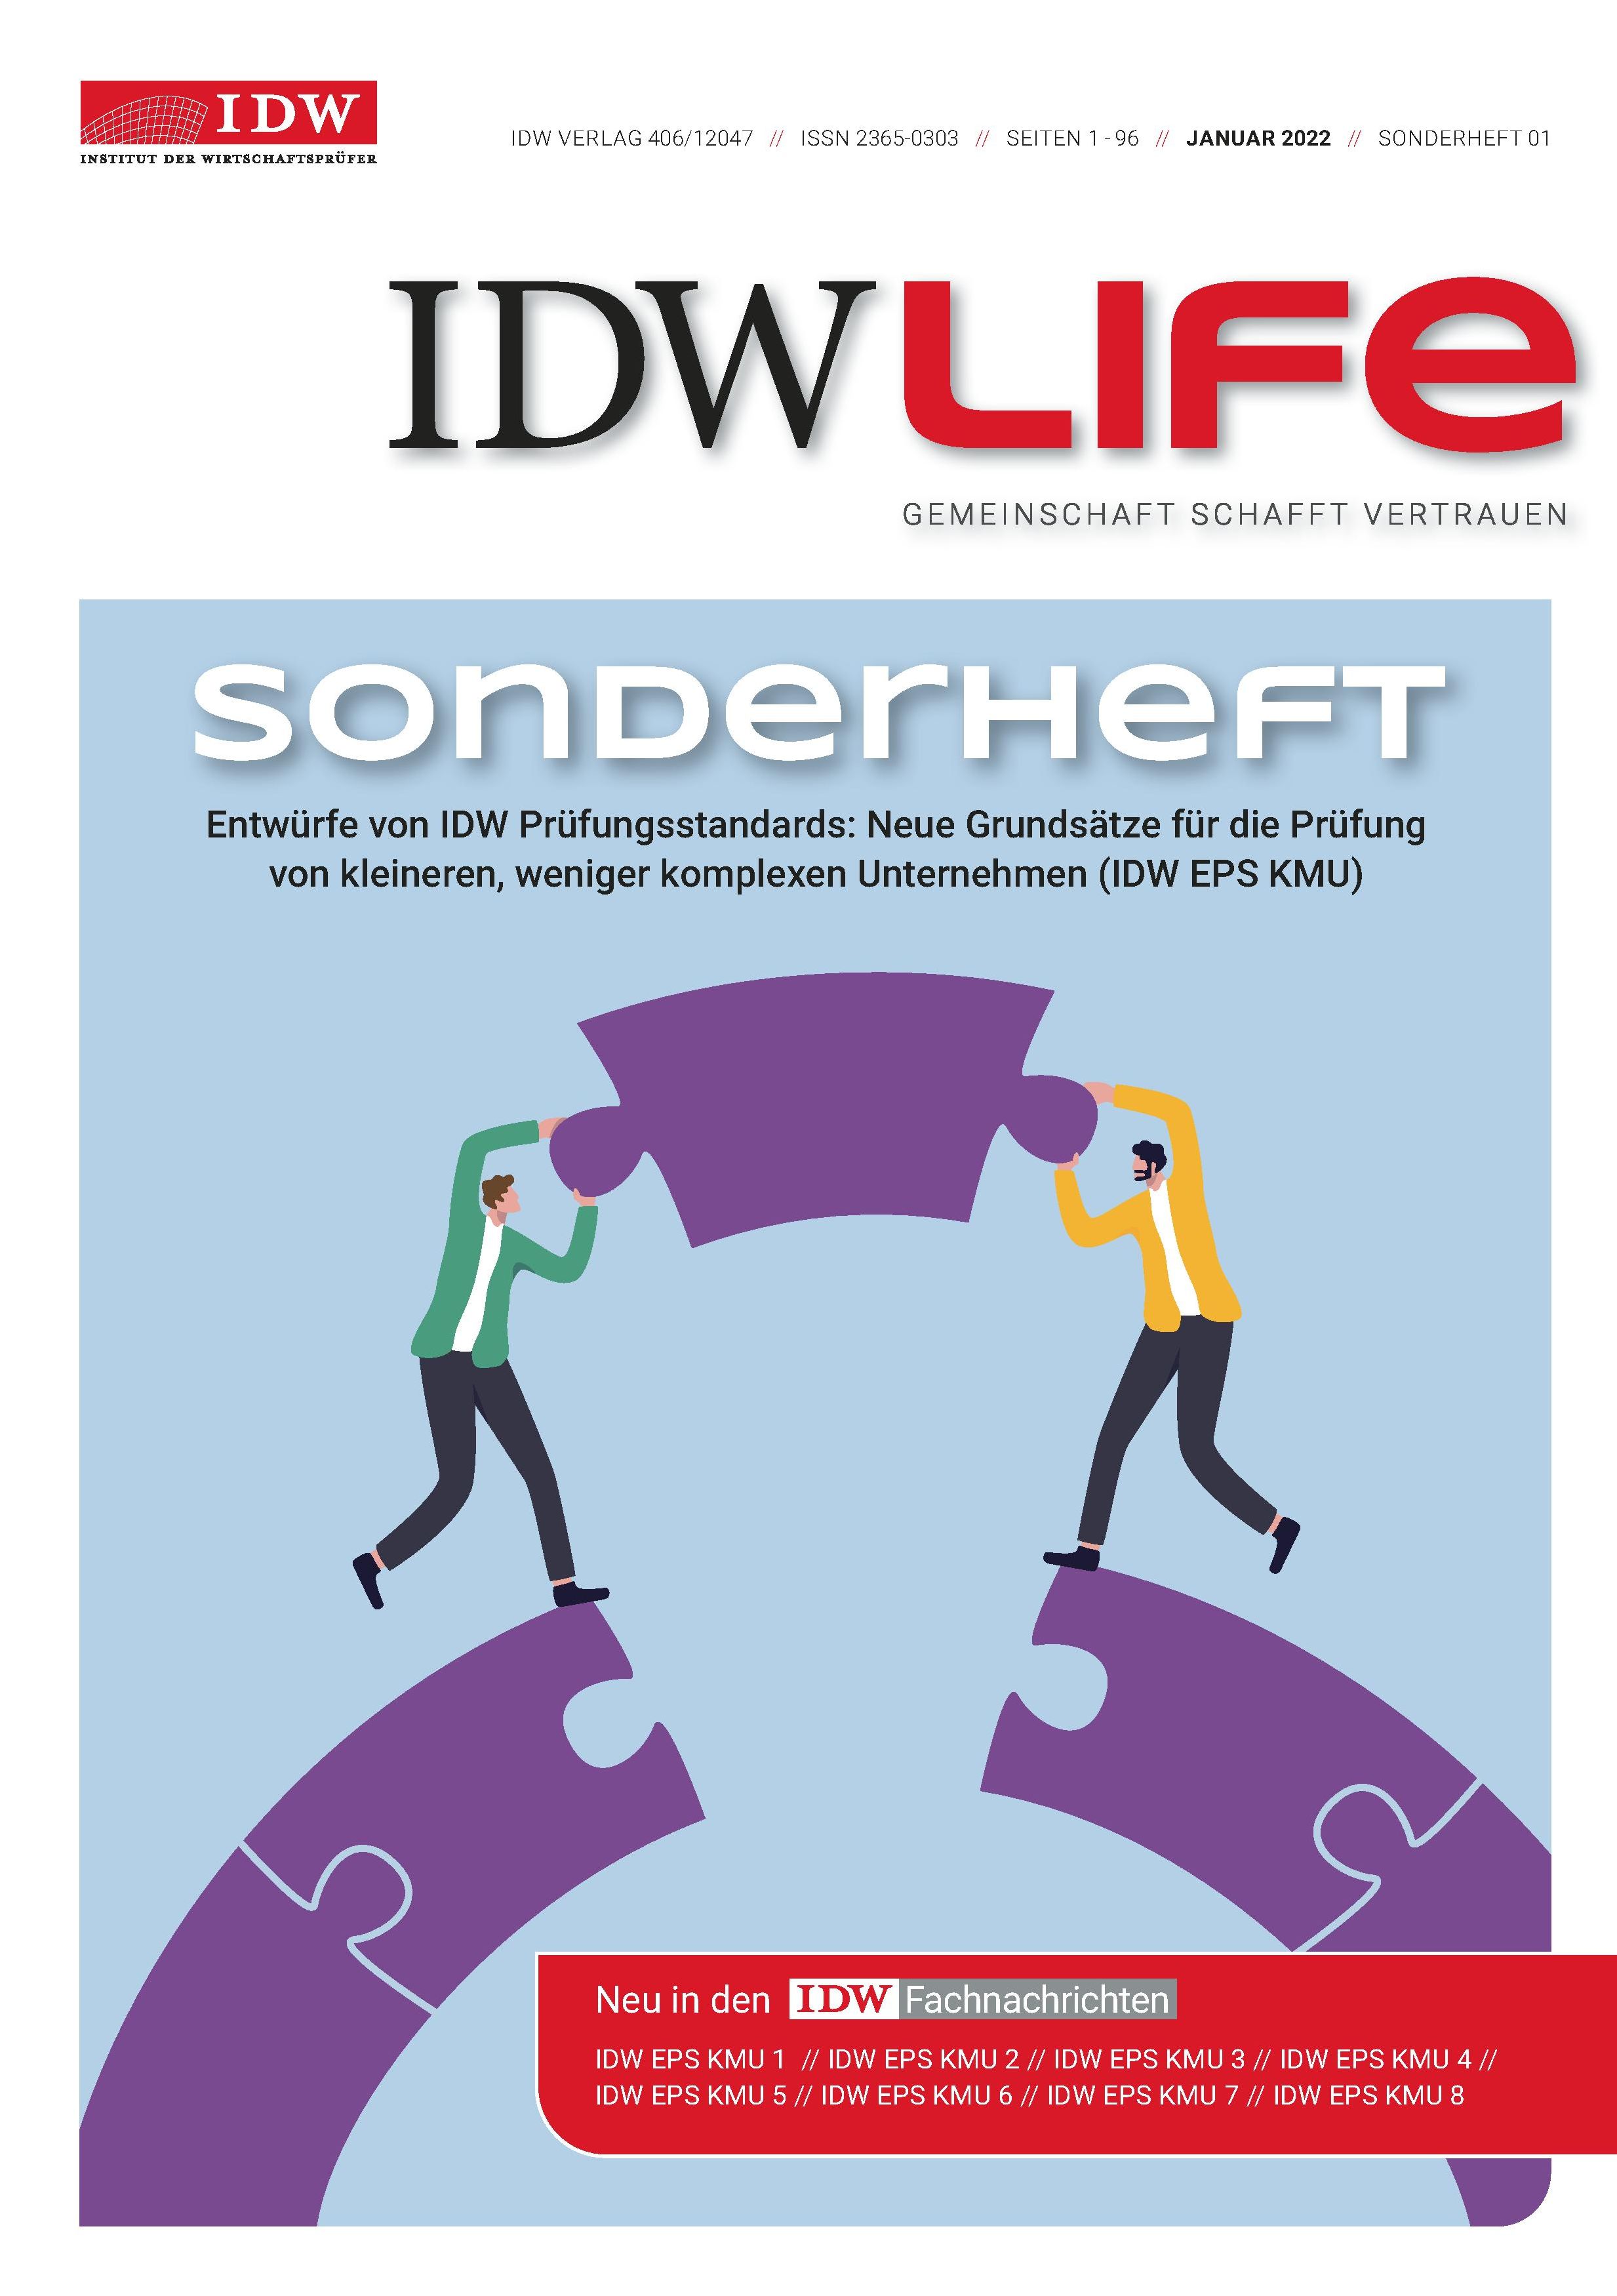 IDW Fachnachrichten-Sonderdruck KMU